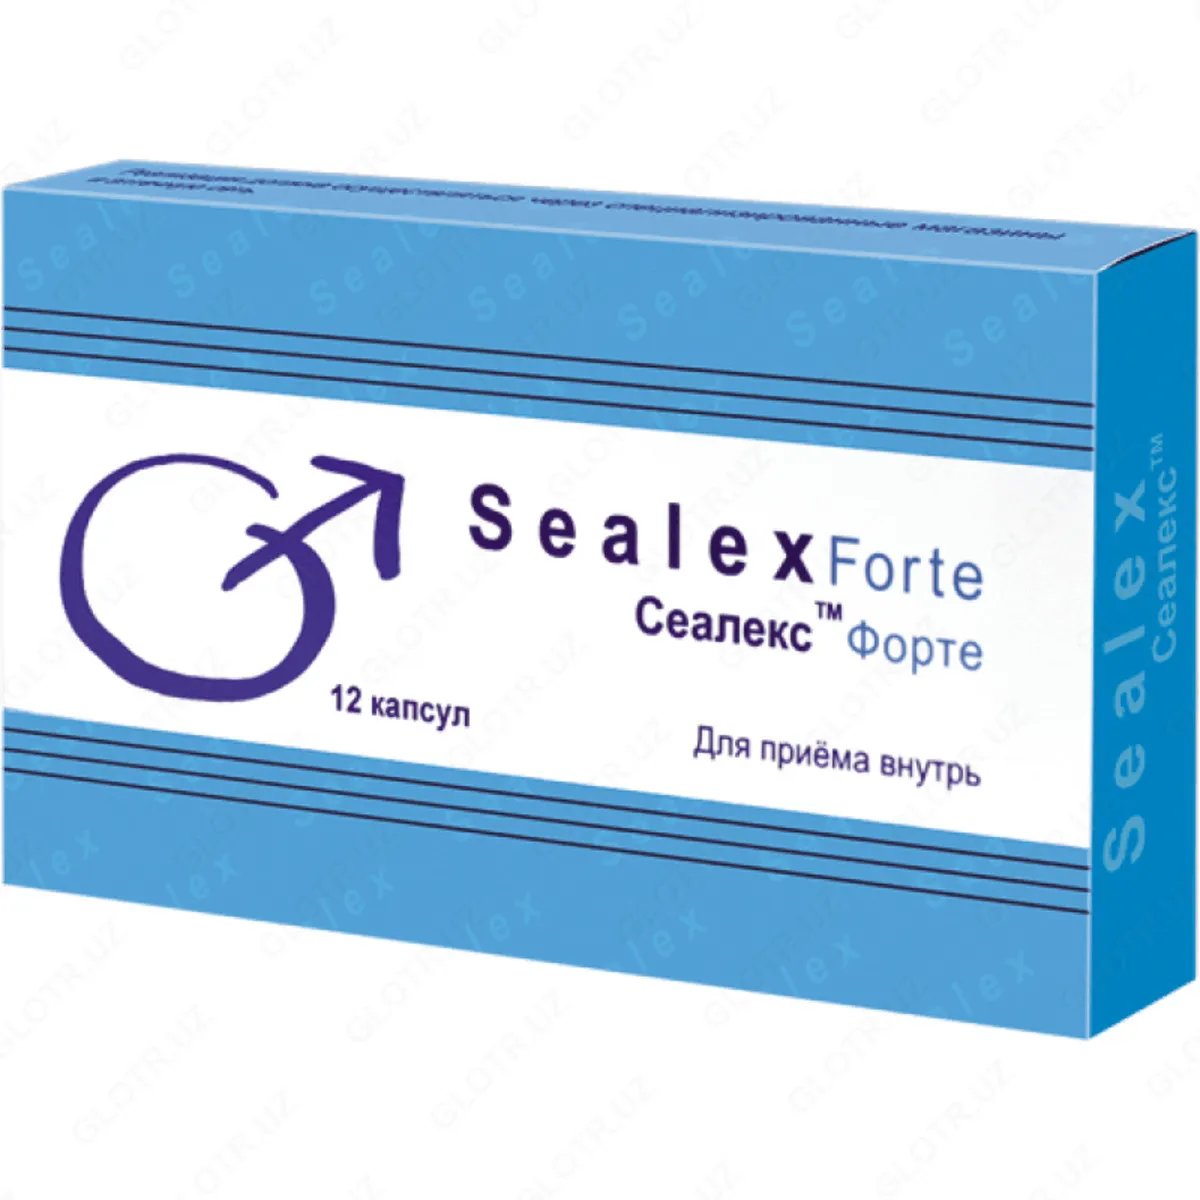 Форте купить в саратове. Сеалекс силденафил 100 мг. Сеалекс форте (4 капс.). Таблетки для потенции сеалекс форте. Сеалекс форте плюс (12 капс.).